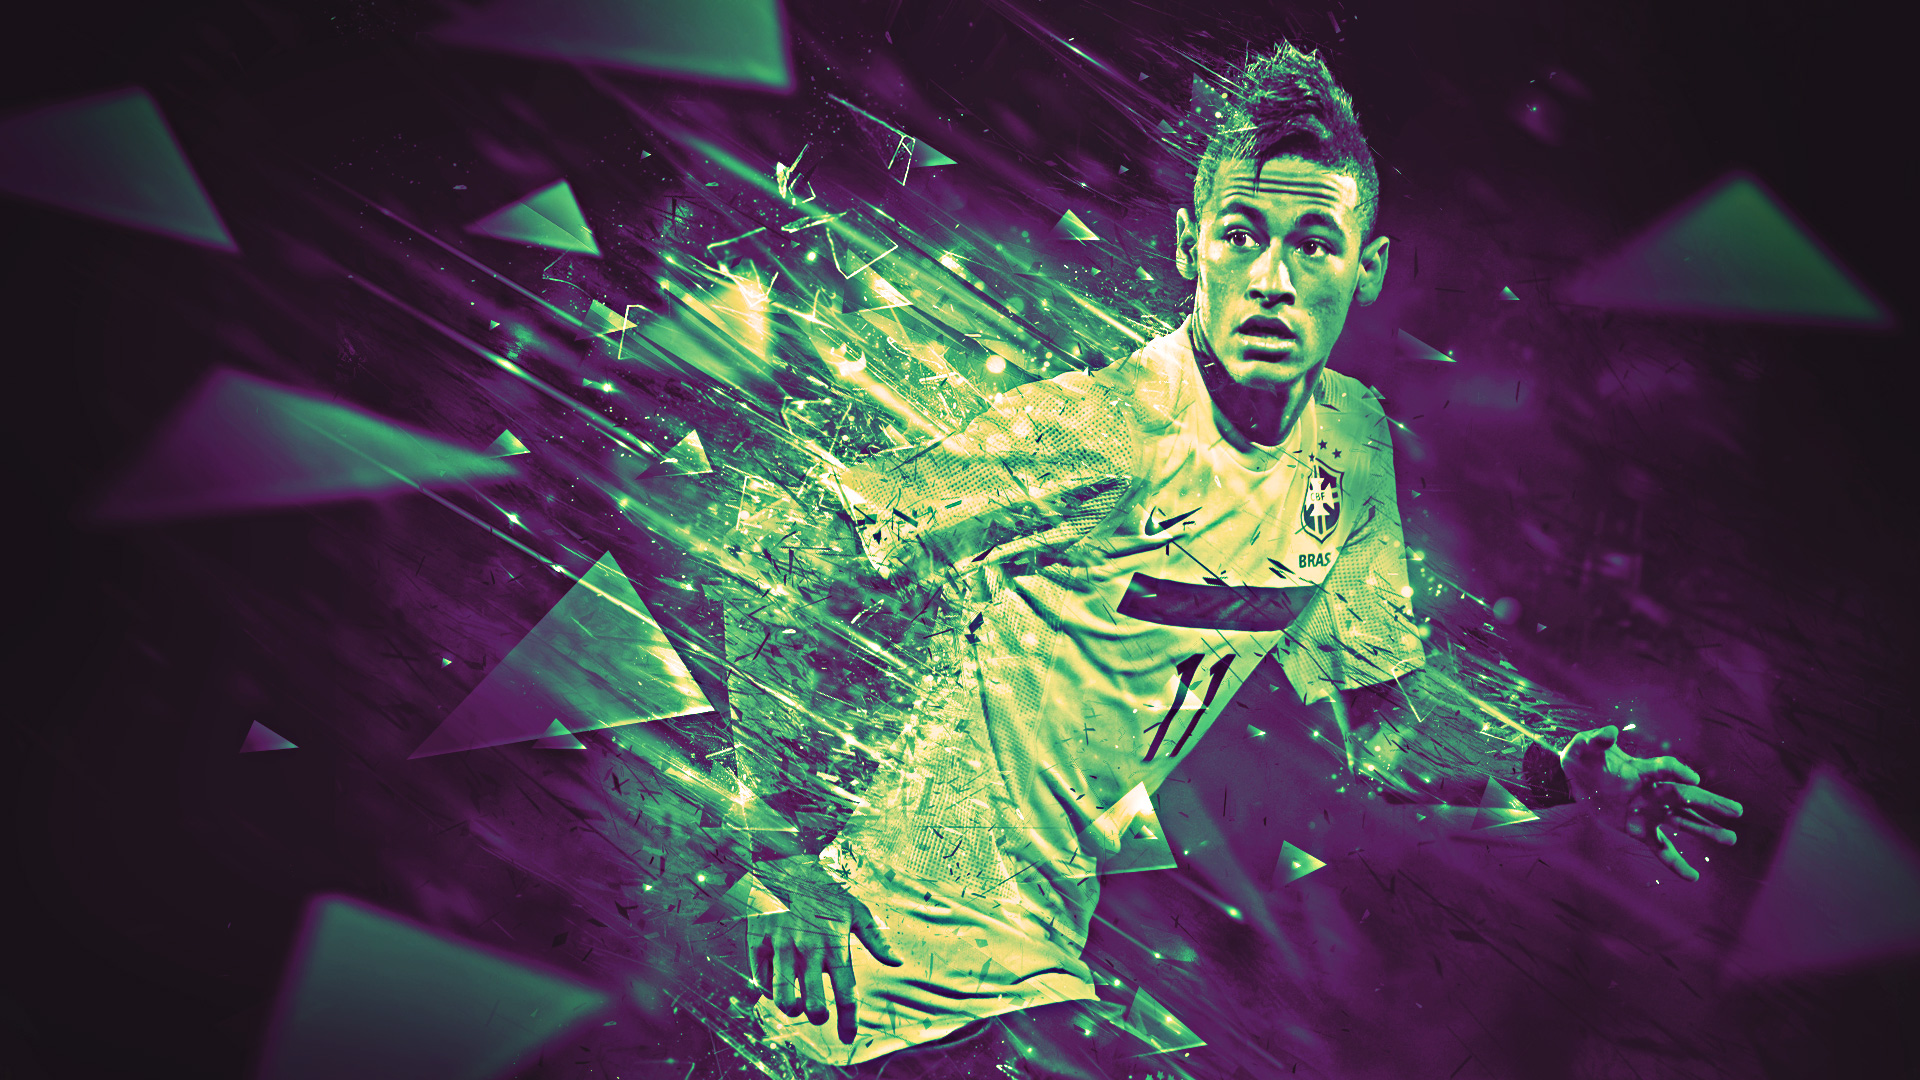 Những hình nền Neymar HD 2014 đầy đủ và đẹp mắt sẽ giúp bạn chinh phục trái tim của các fan hâm mộ bóng đá. Nếu bạn muốn sở hữu một trang trí nền tảng độc đáo cho thiết bị của mình, đừng ngần ngại truy cập và tải hình nền Neymar HD ngay hôm nay!